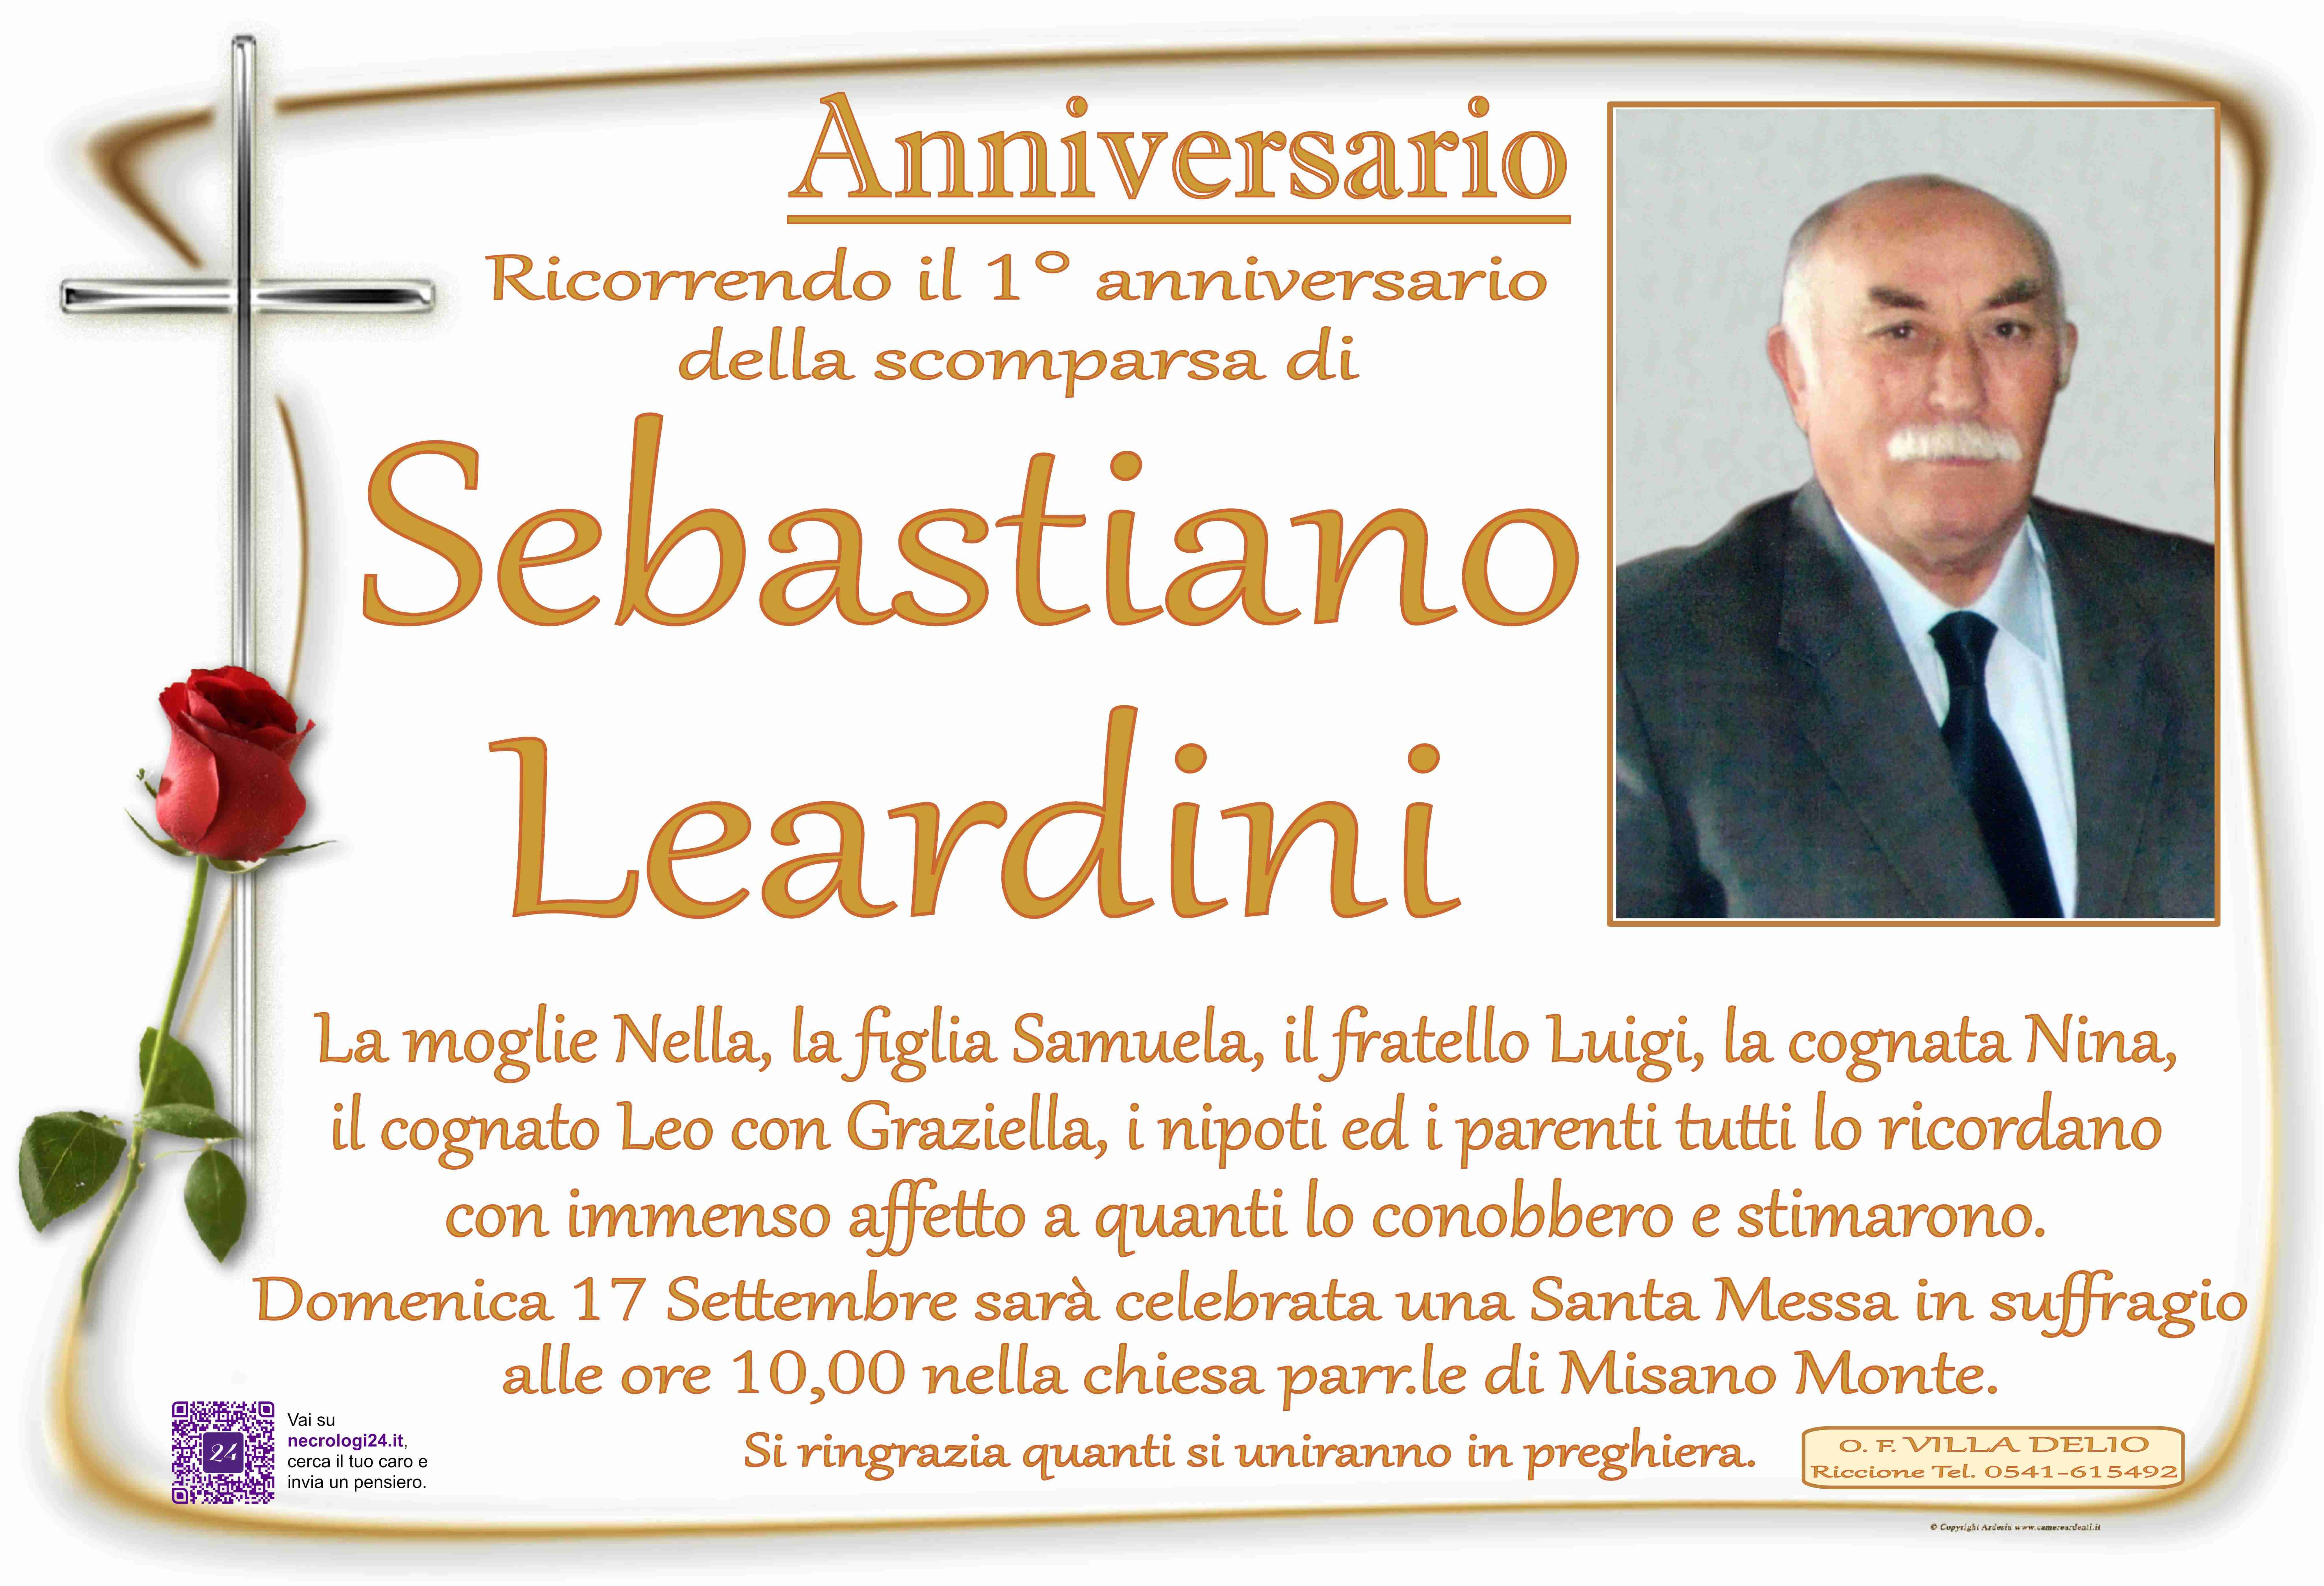 Sebastiano Leardini